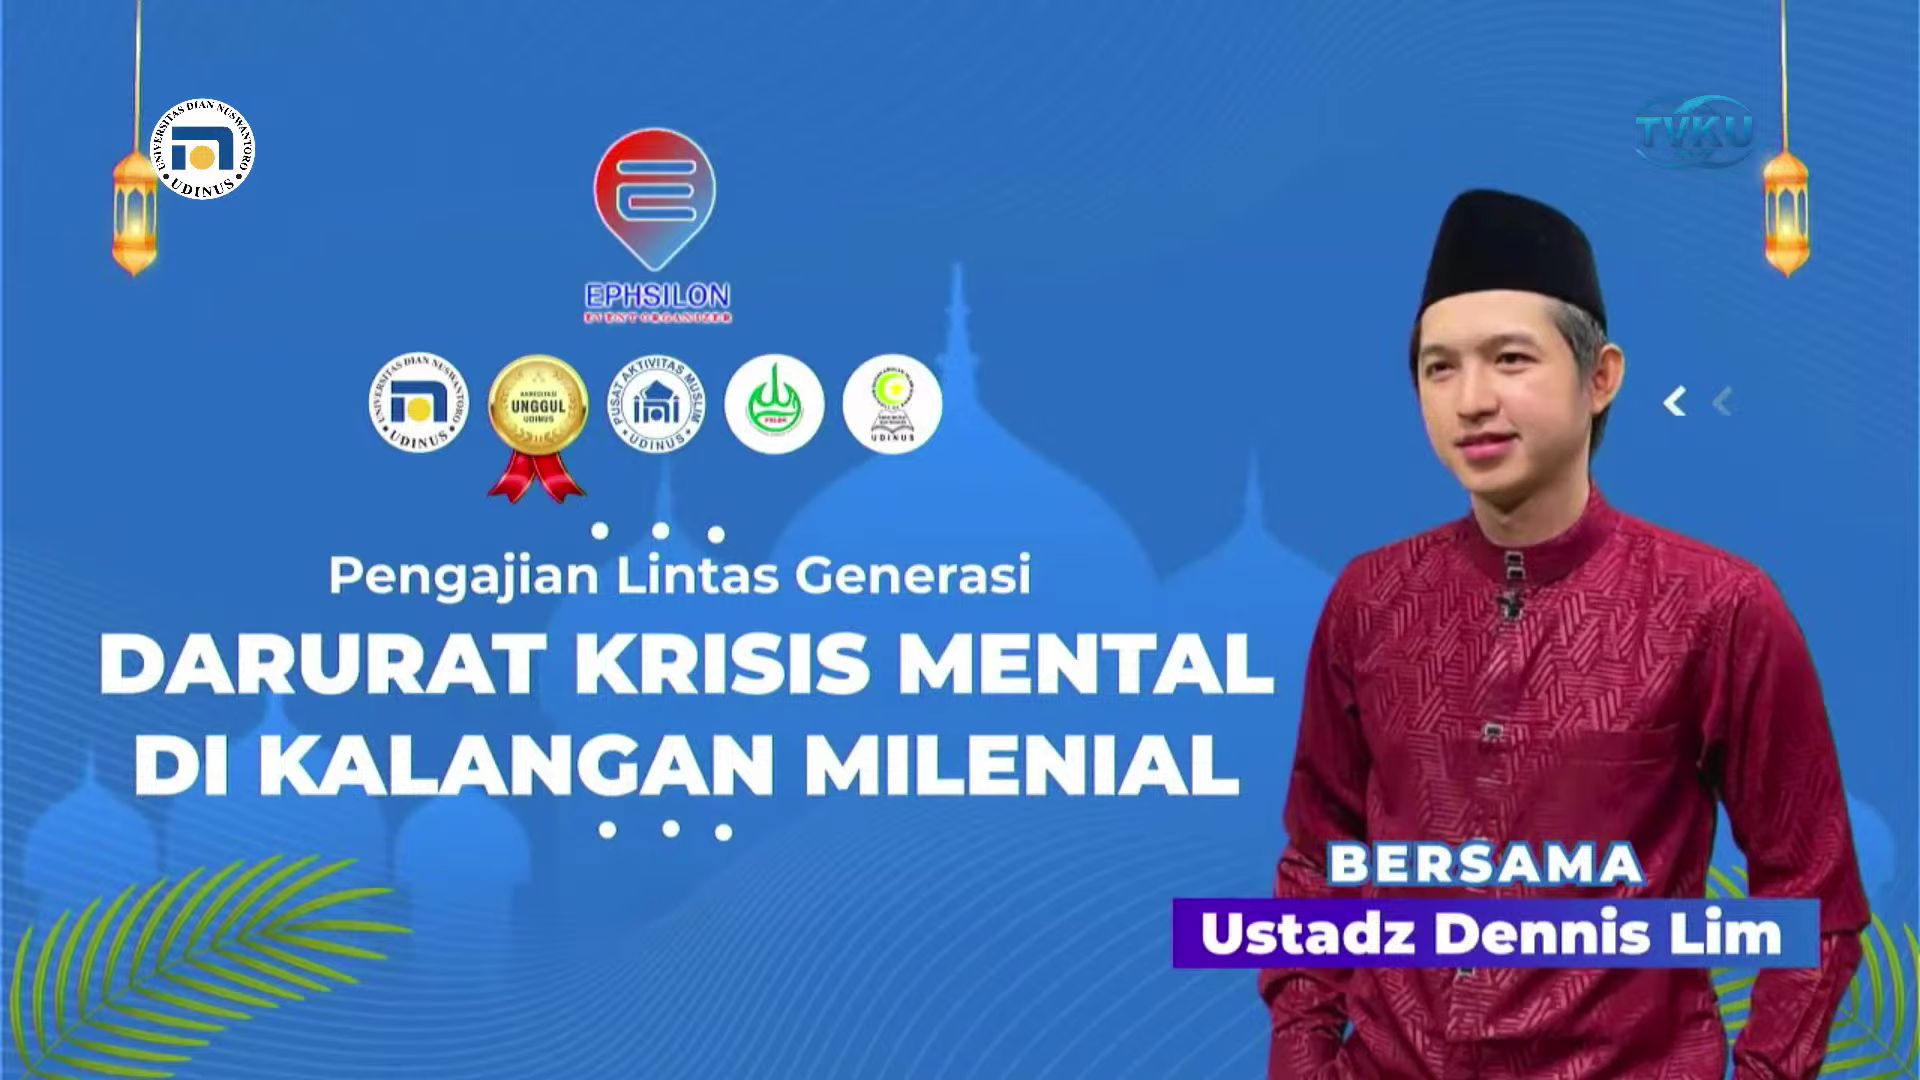  Darurat Krisis Mental di Kalangan Milenial Bersama Ust. Dennis Lim